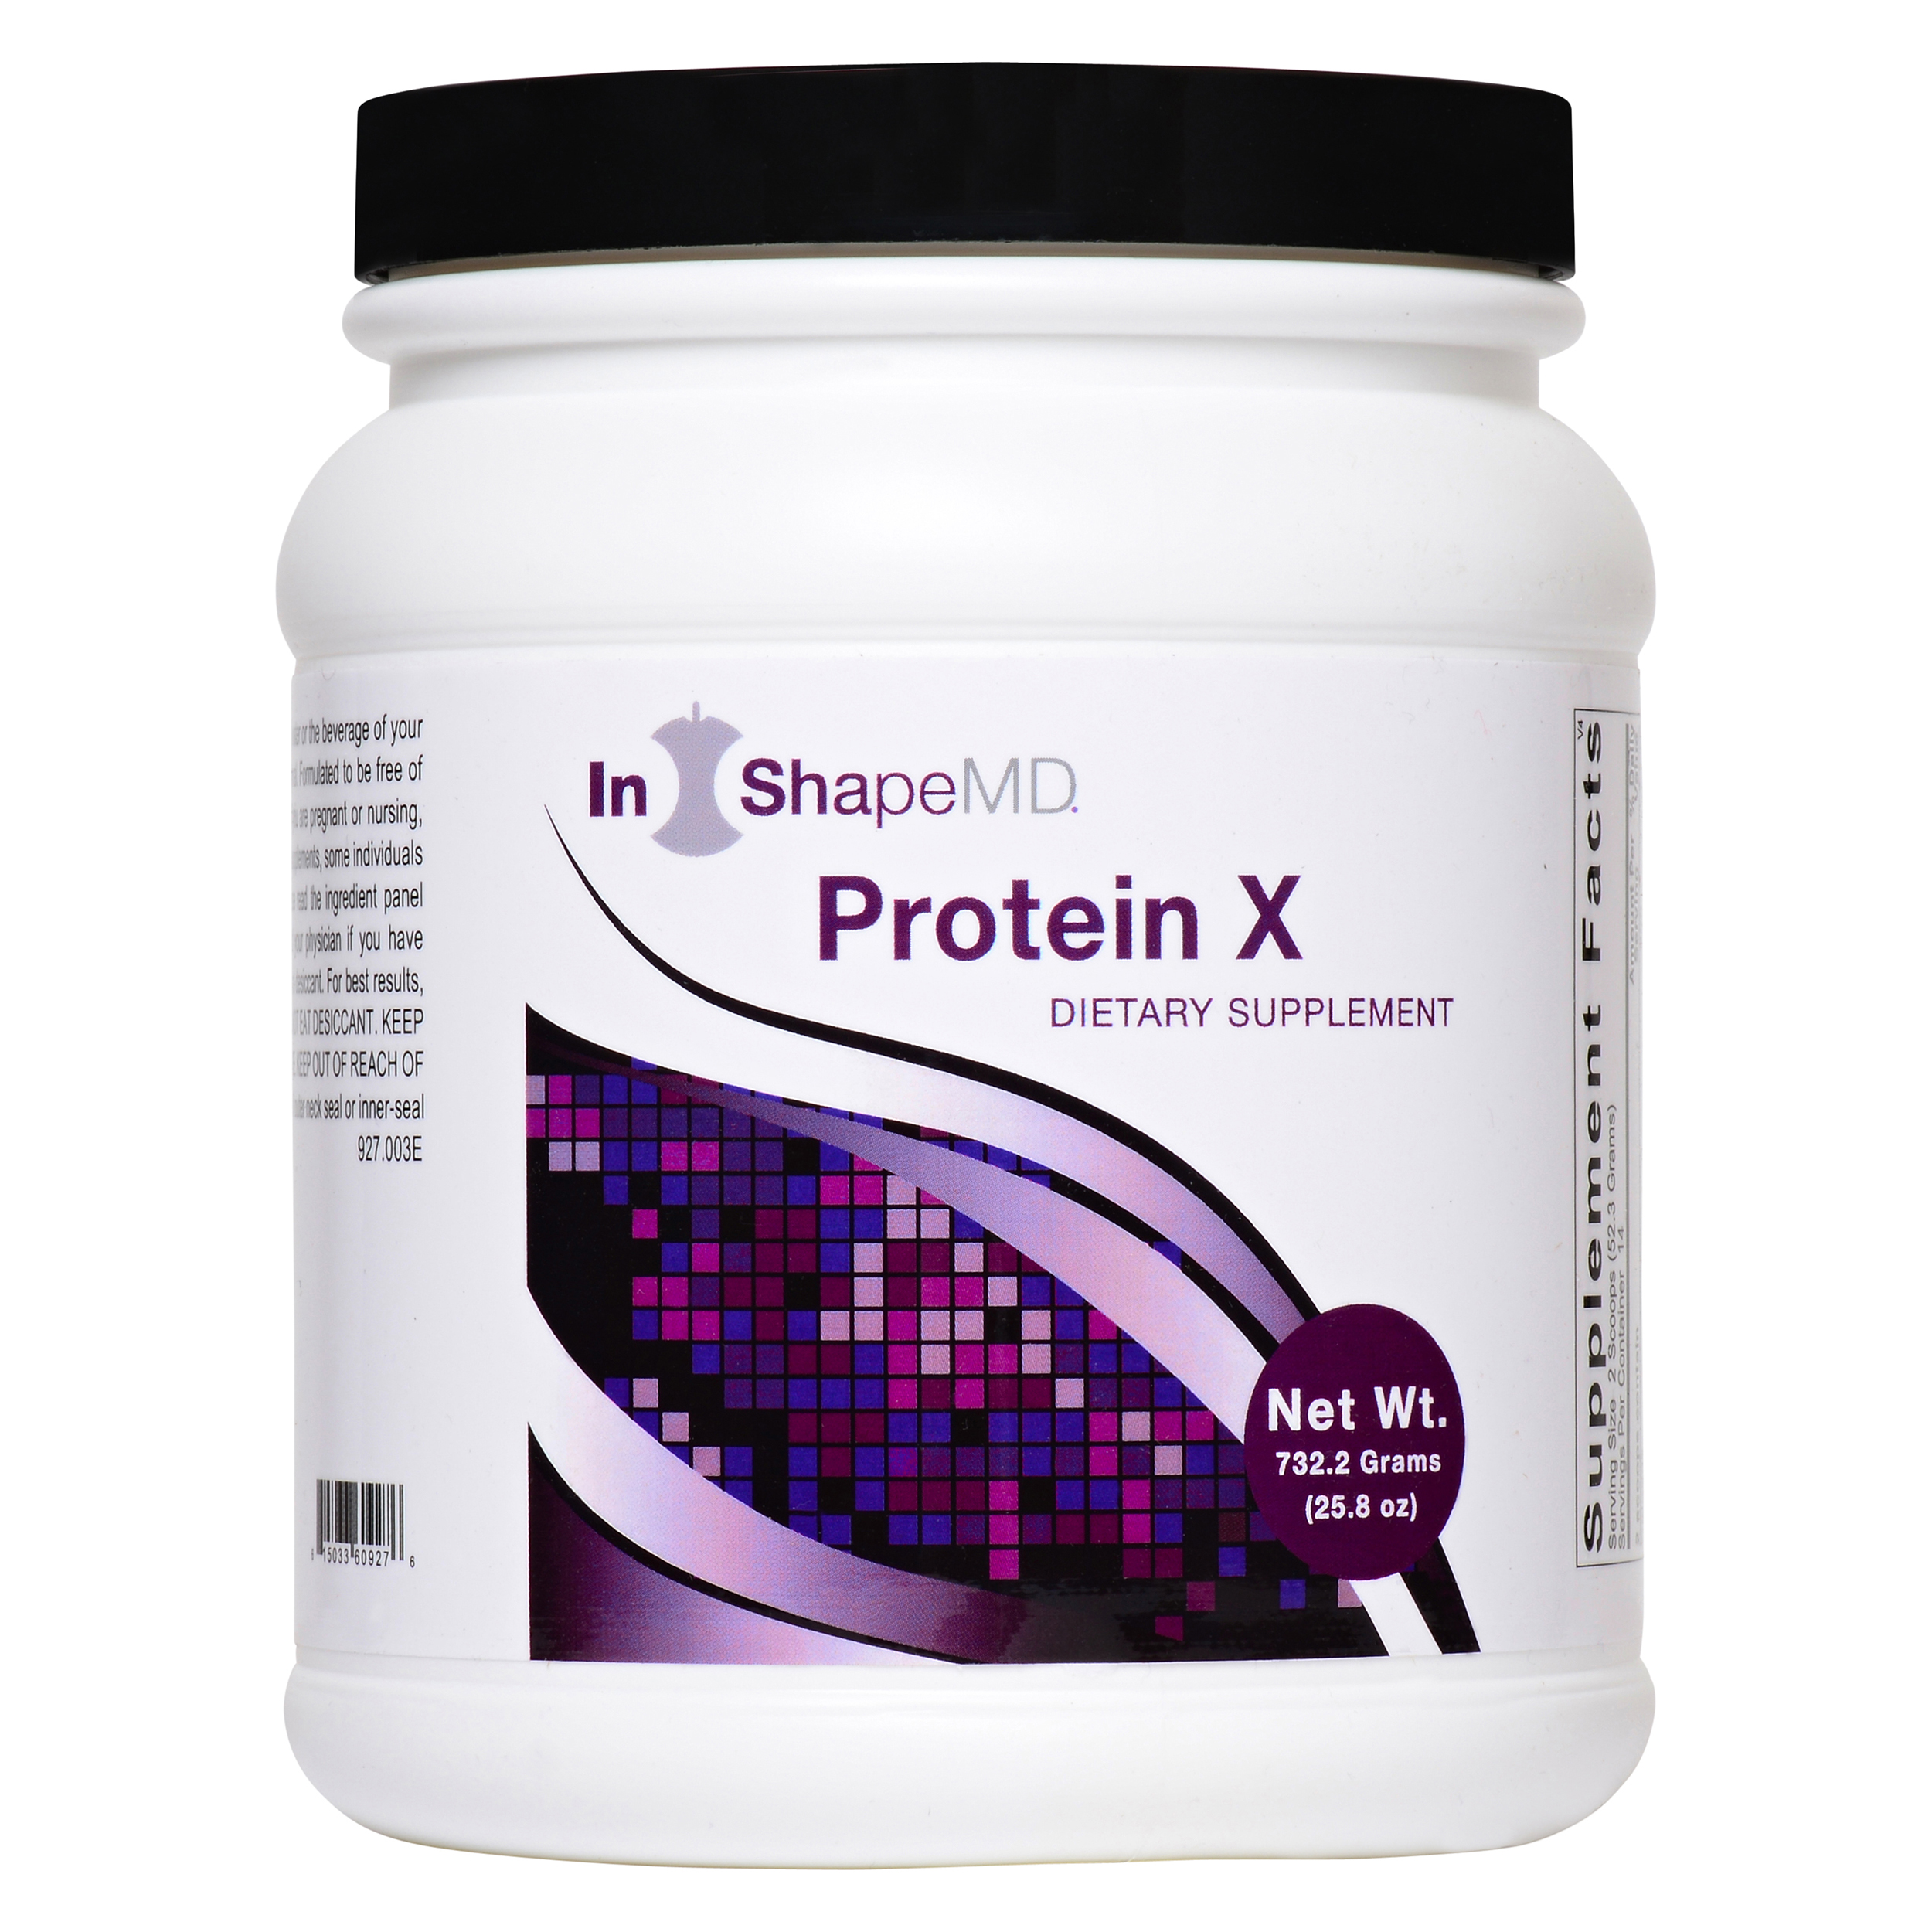 Protein X